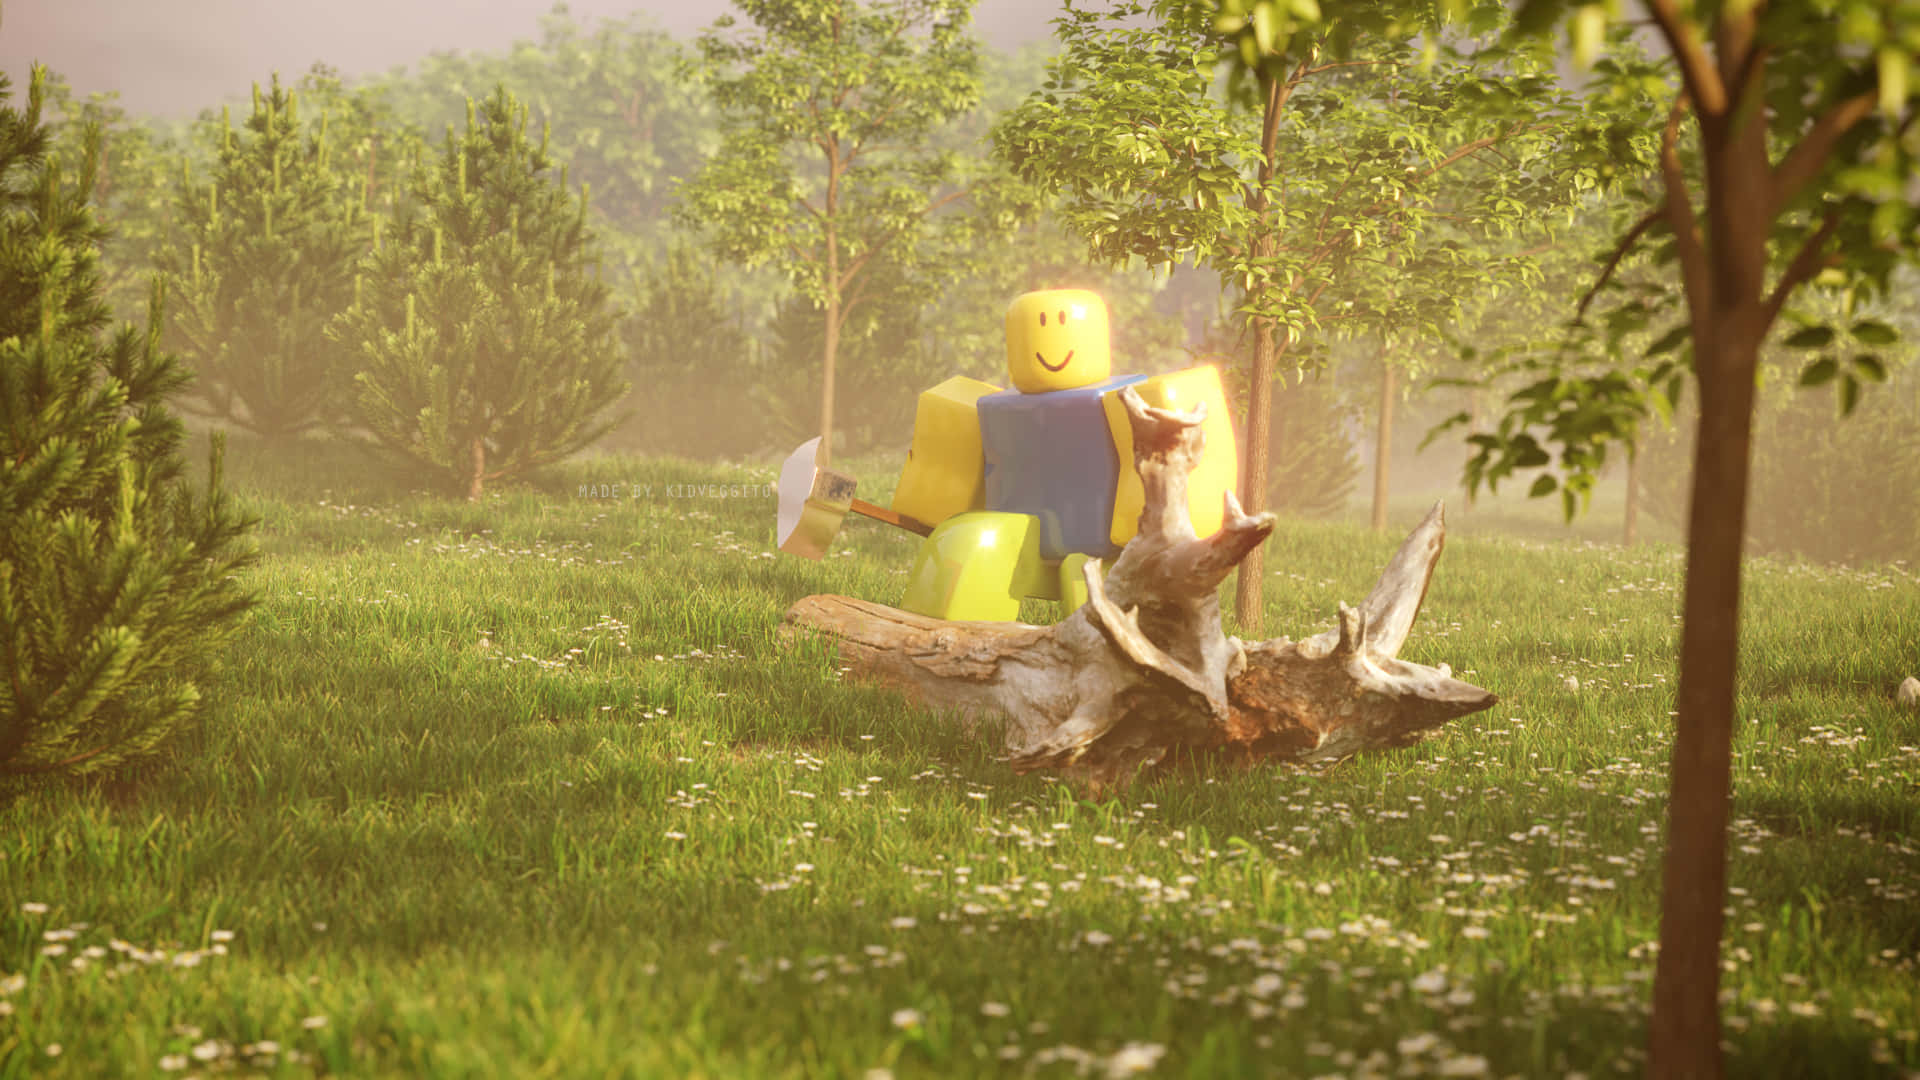 Unhombre De Lego Está Parado En Un Campo Con Árboles. Fondo de pantalla